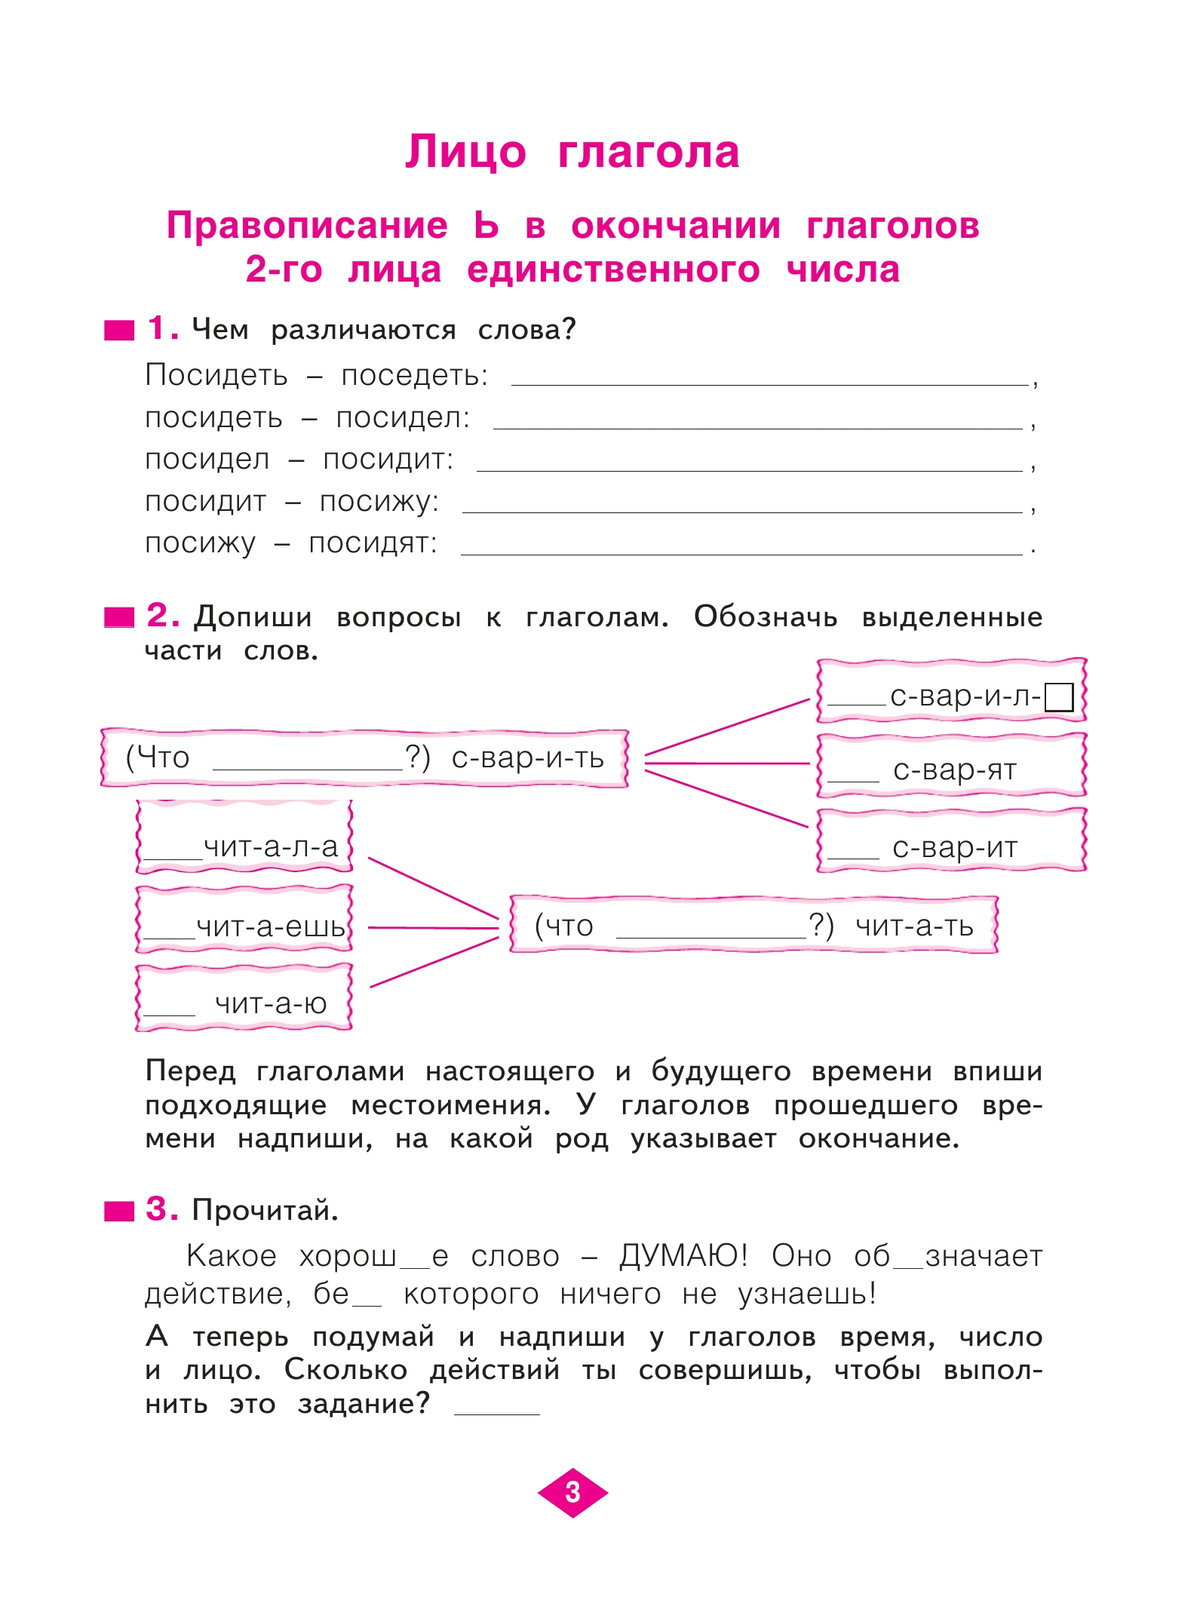 Русский язык. Рабочая тетрадь. 4 класс. В 4-х частях. Часть 3 5